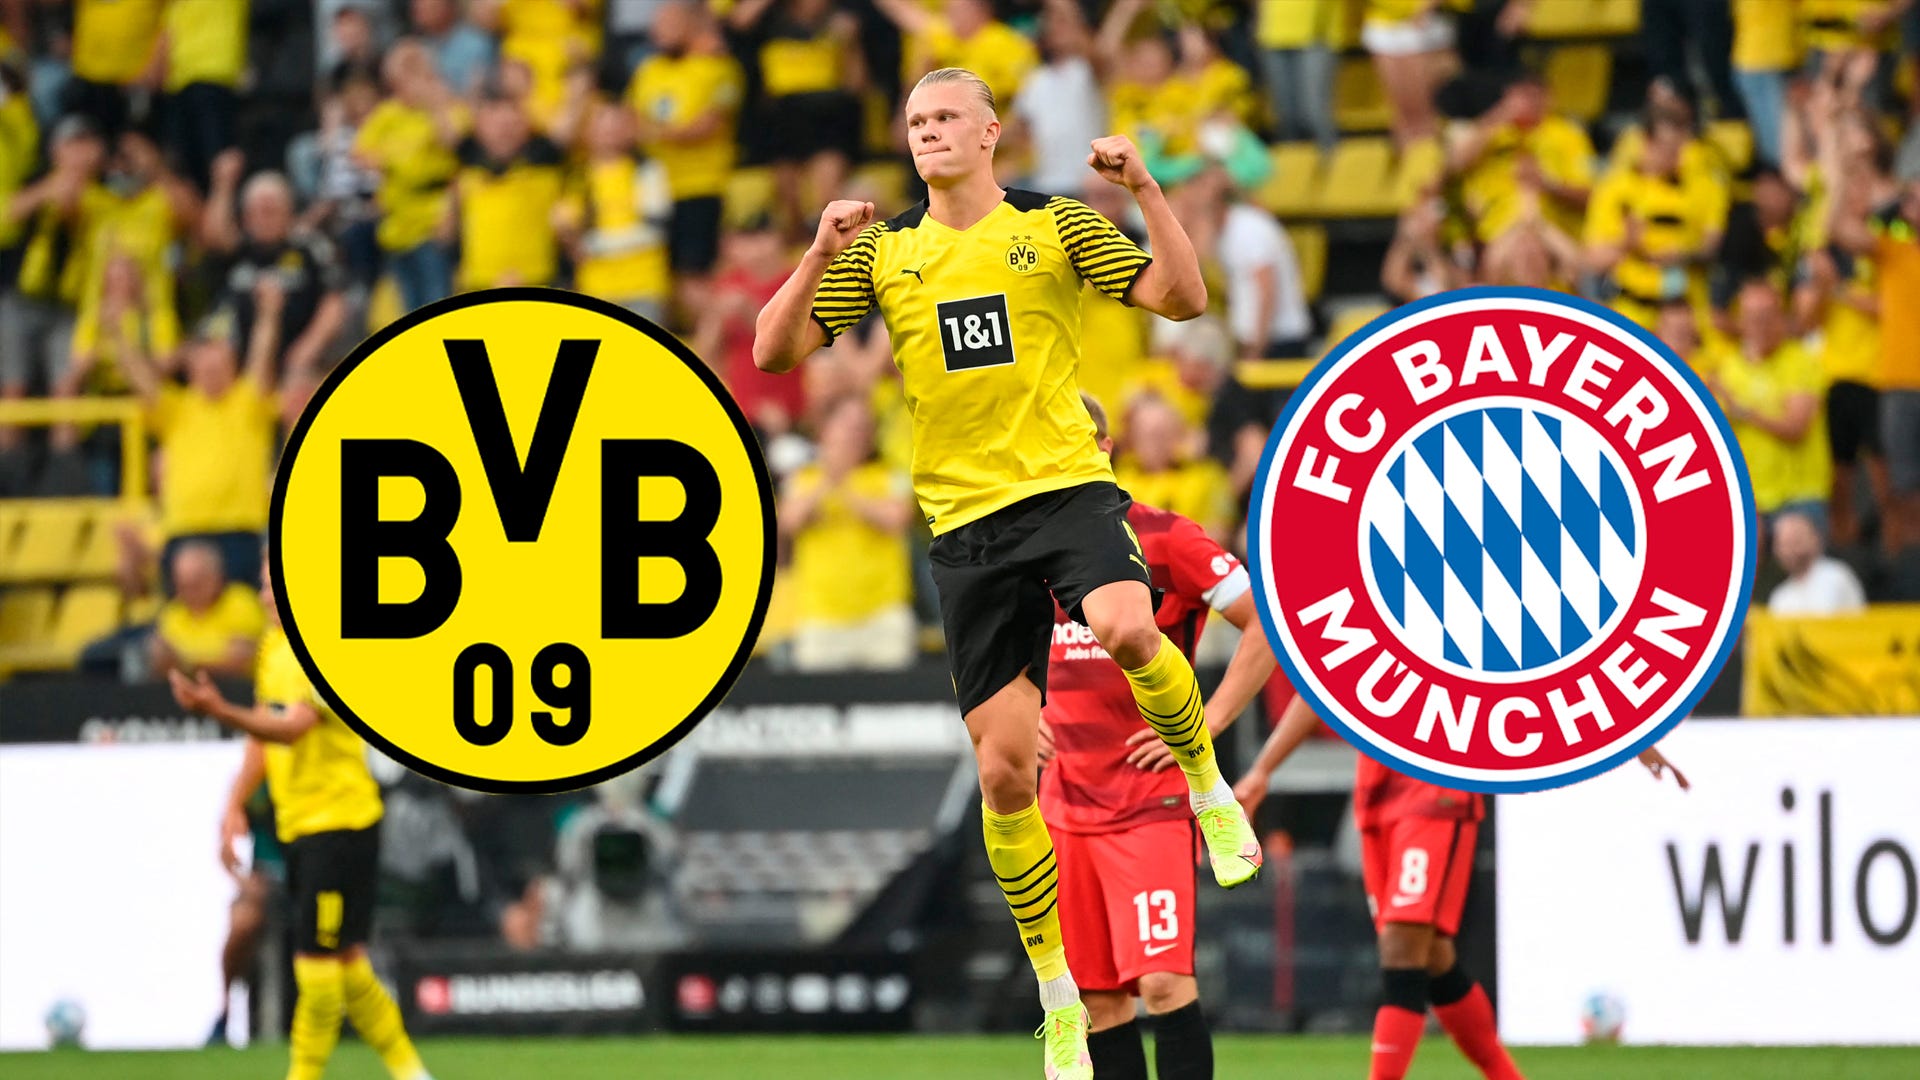 Fußball heute live im TV und LIVE-STREAM BVB (Borussia Dortmund) vs